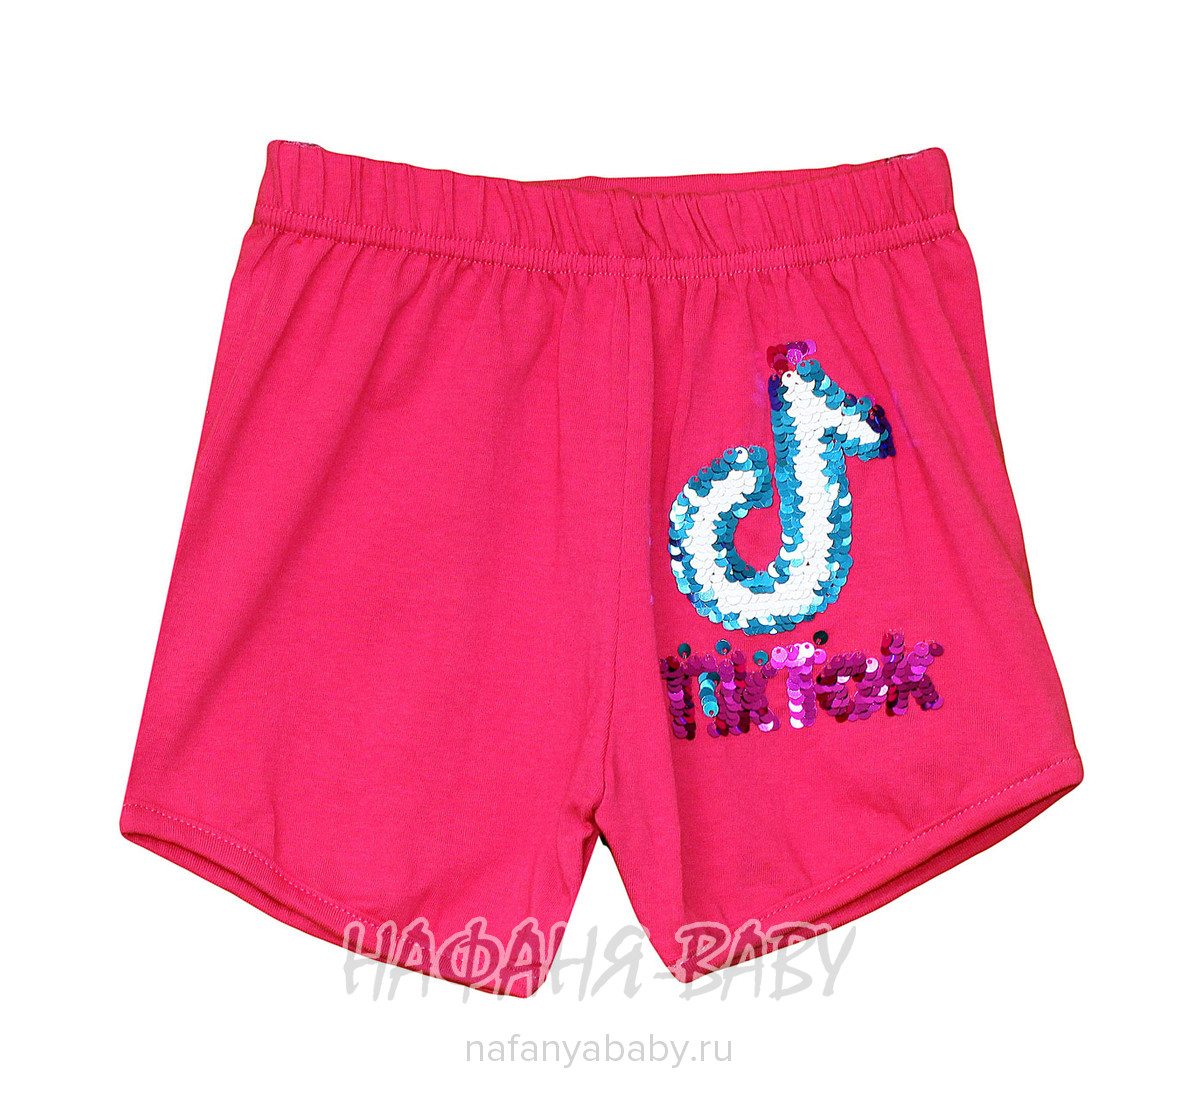 Детские шорты для девочки BASAK, купить в интернет магазине Нафаня. арт: 3576.